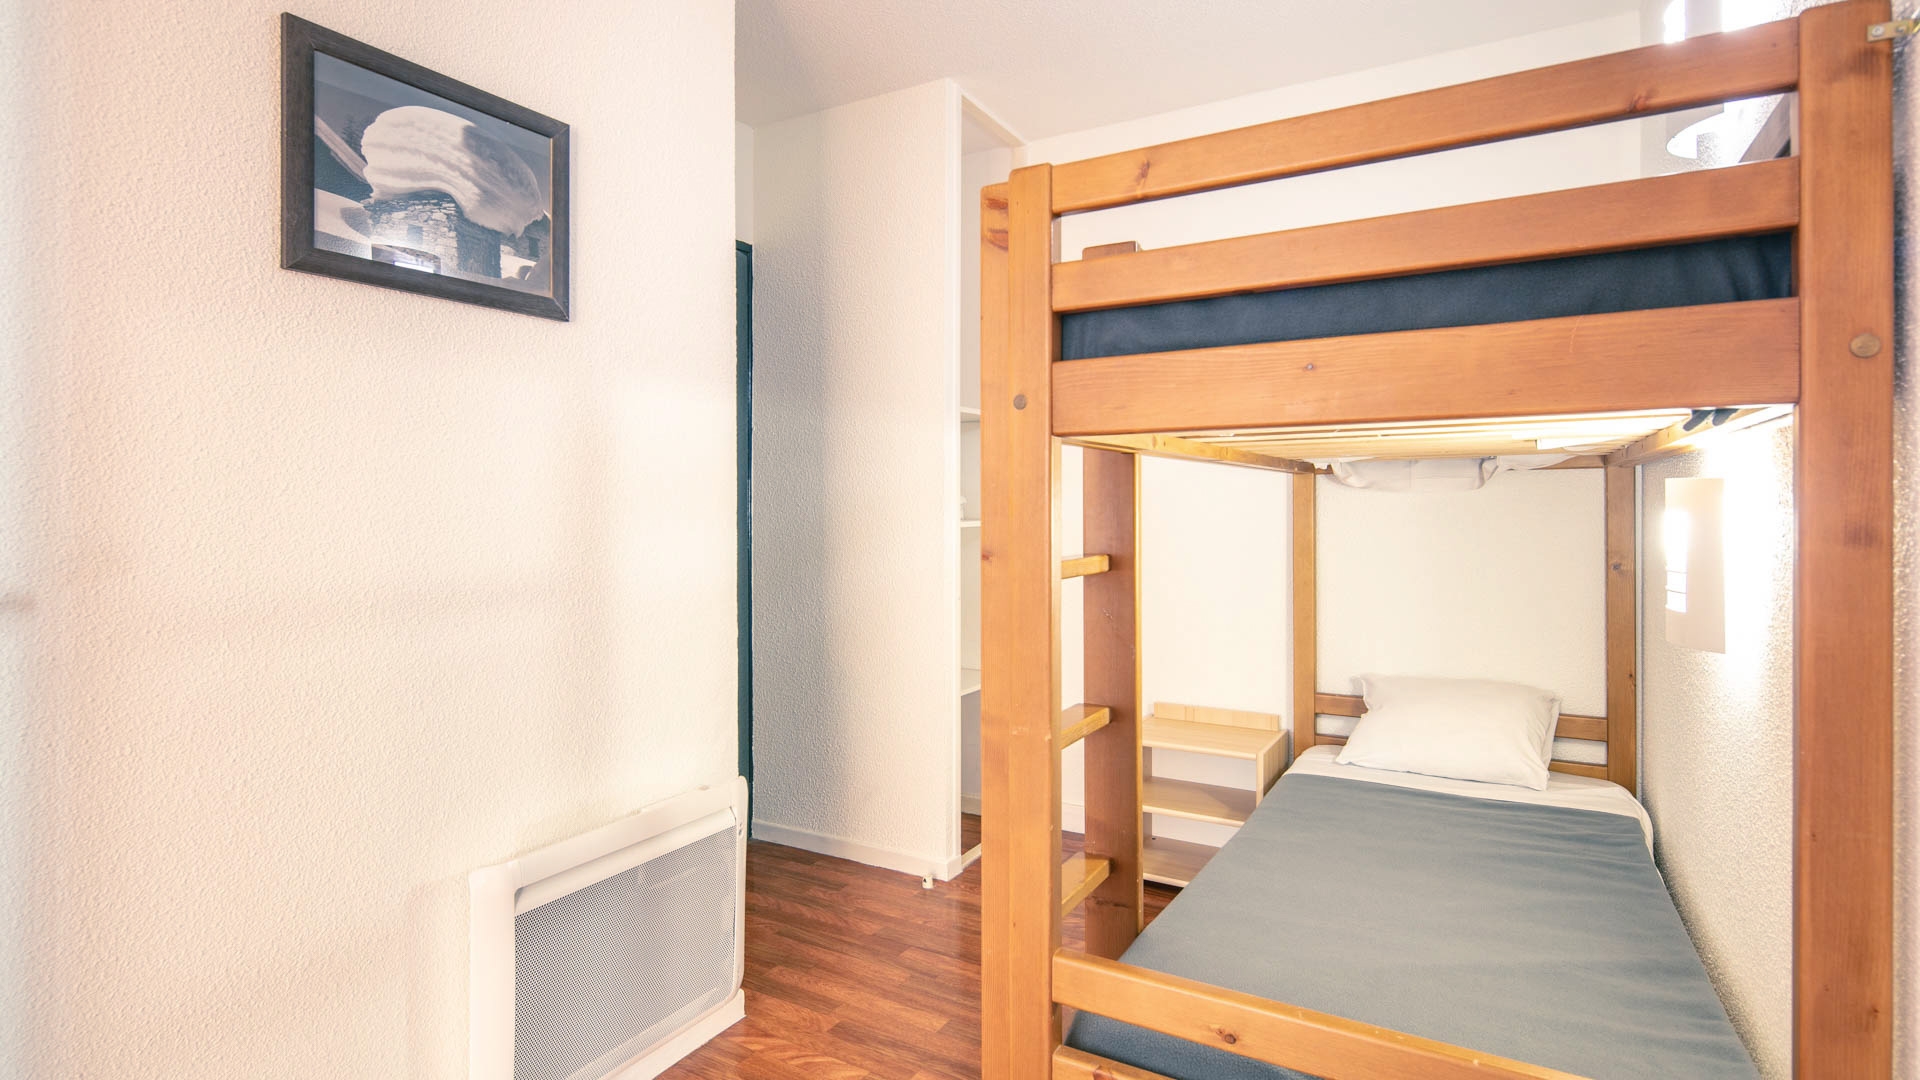 L'Edelweiss in Les 2 Alpes - Appartement für 6 Personen: Schlafbereich (Beispiel)